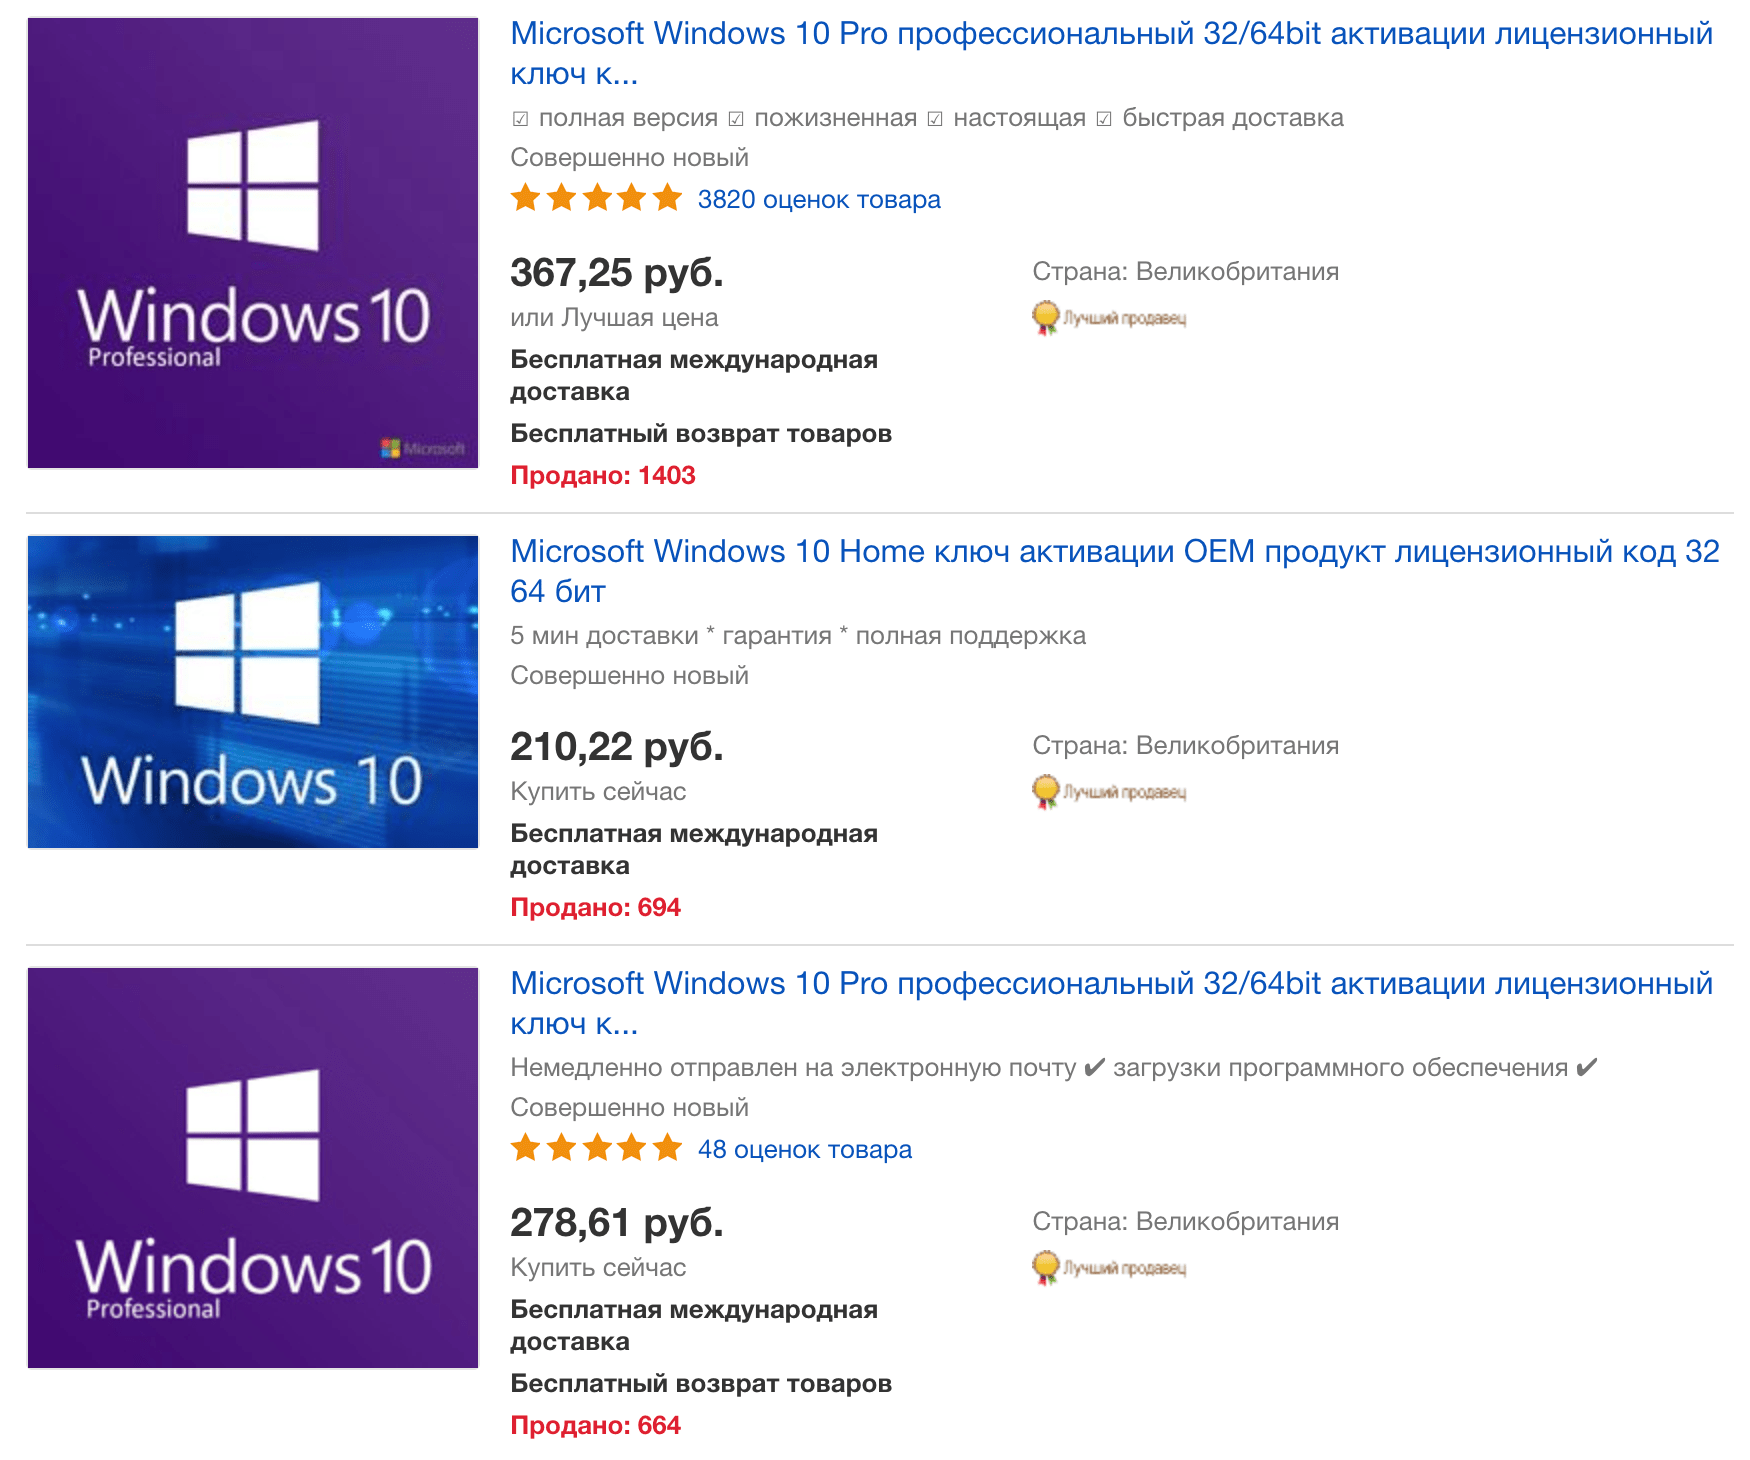 Лицензию Windows 10 Pro 2018 можно купить за 250 рублей.